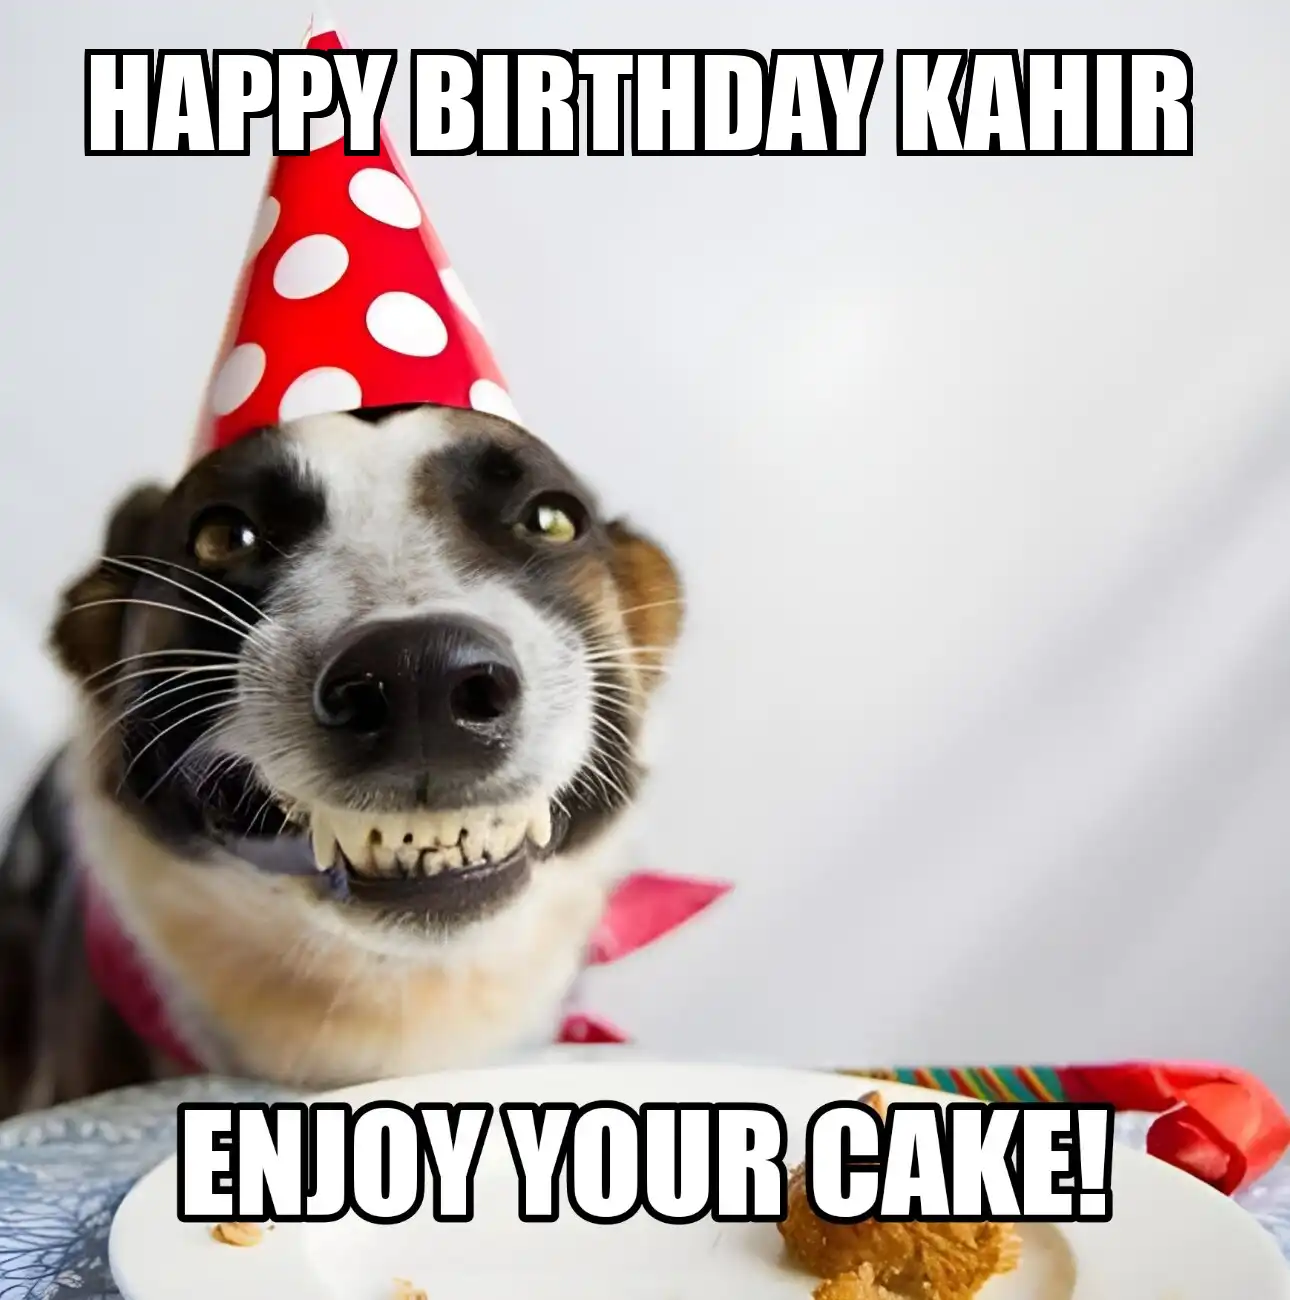 Happy Birthday Kahir Enjoy Your Cake Dog Meme